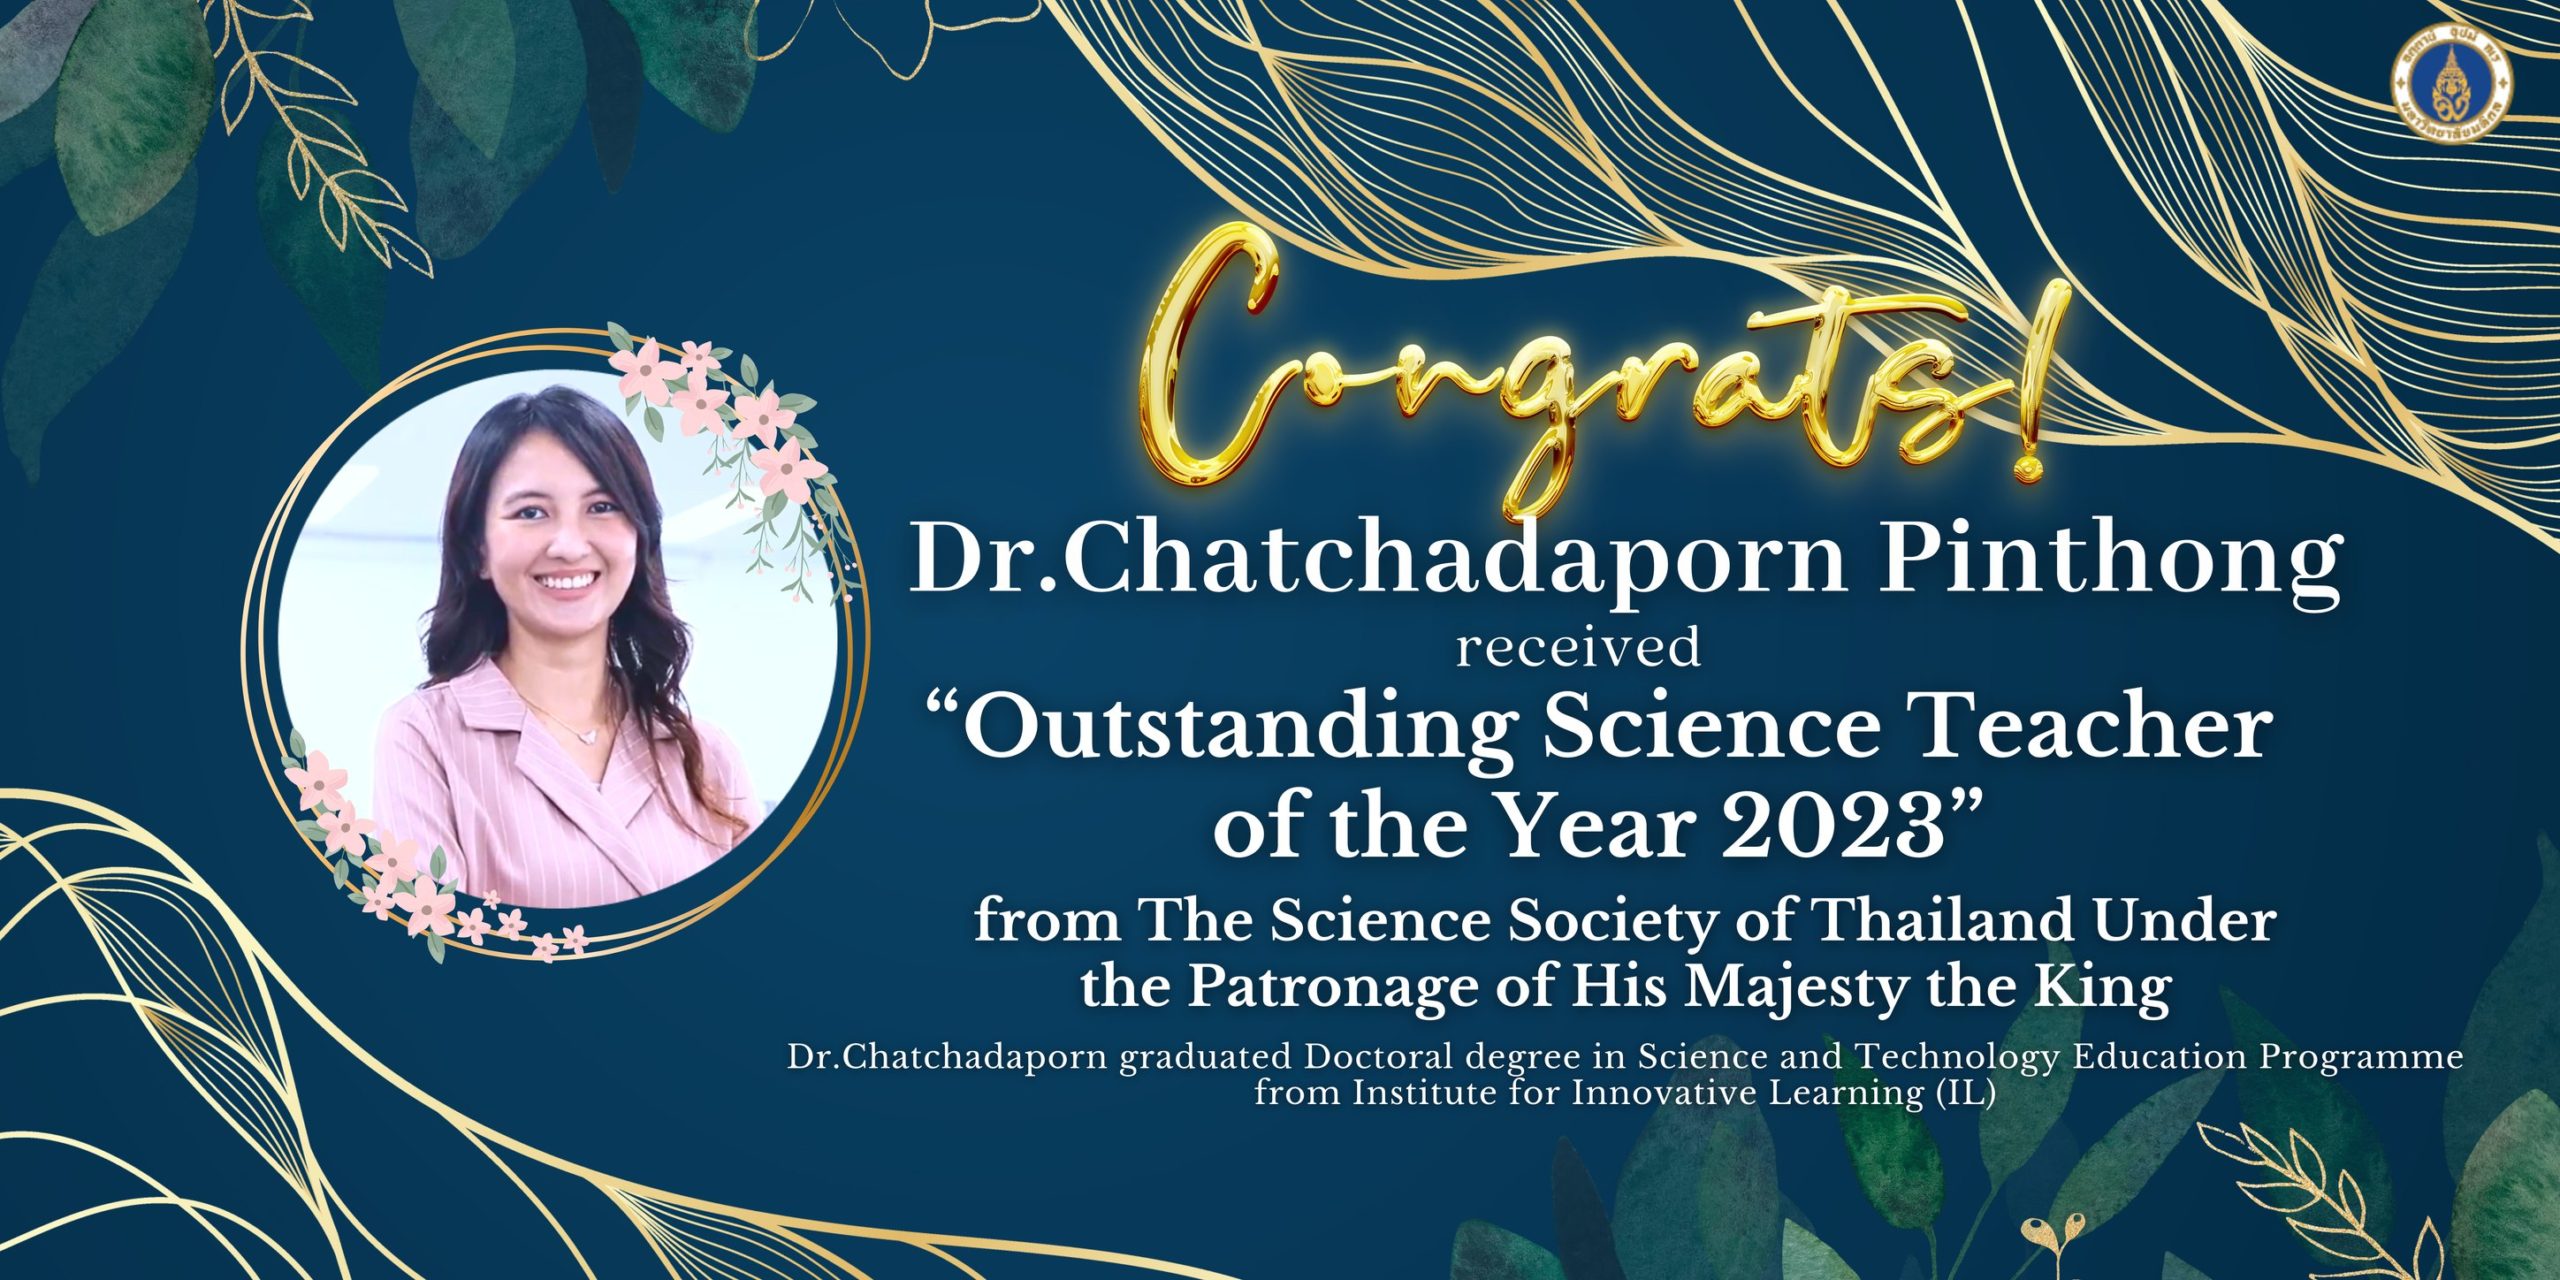 Congratulations to Dr.Chatchadaporn Pinthong